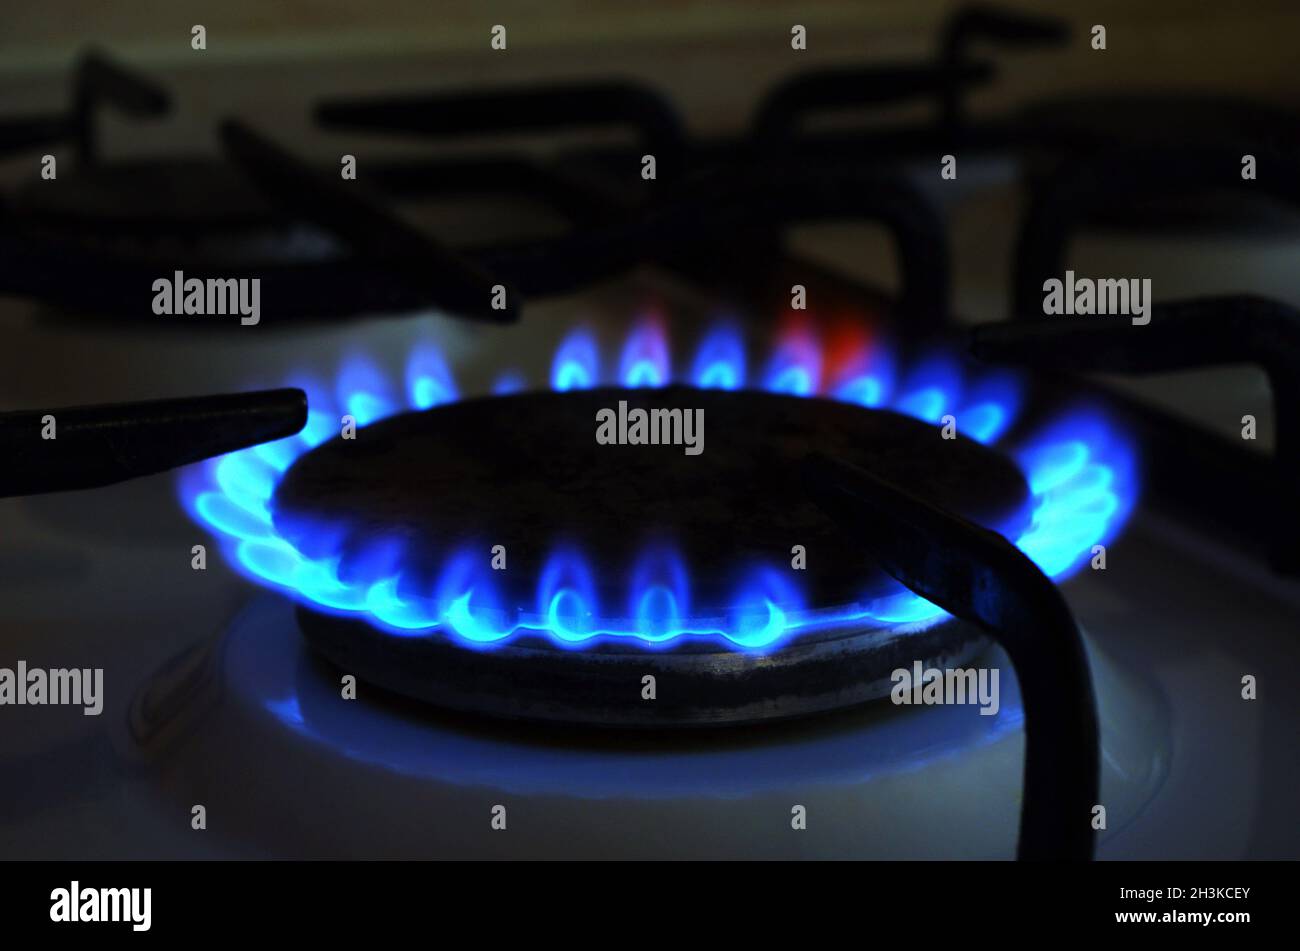 Gas naturale. Prezzi elevati di gas naturale. Fiamme blu di gas che bruciano da una stufa a gas da cucina. Crisi energetica. Foto Stock